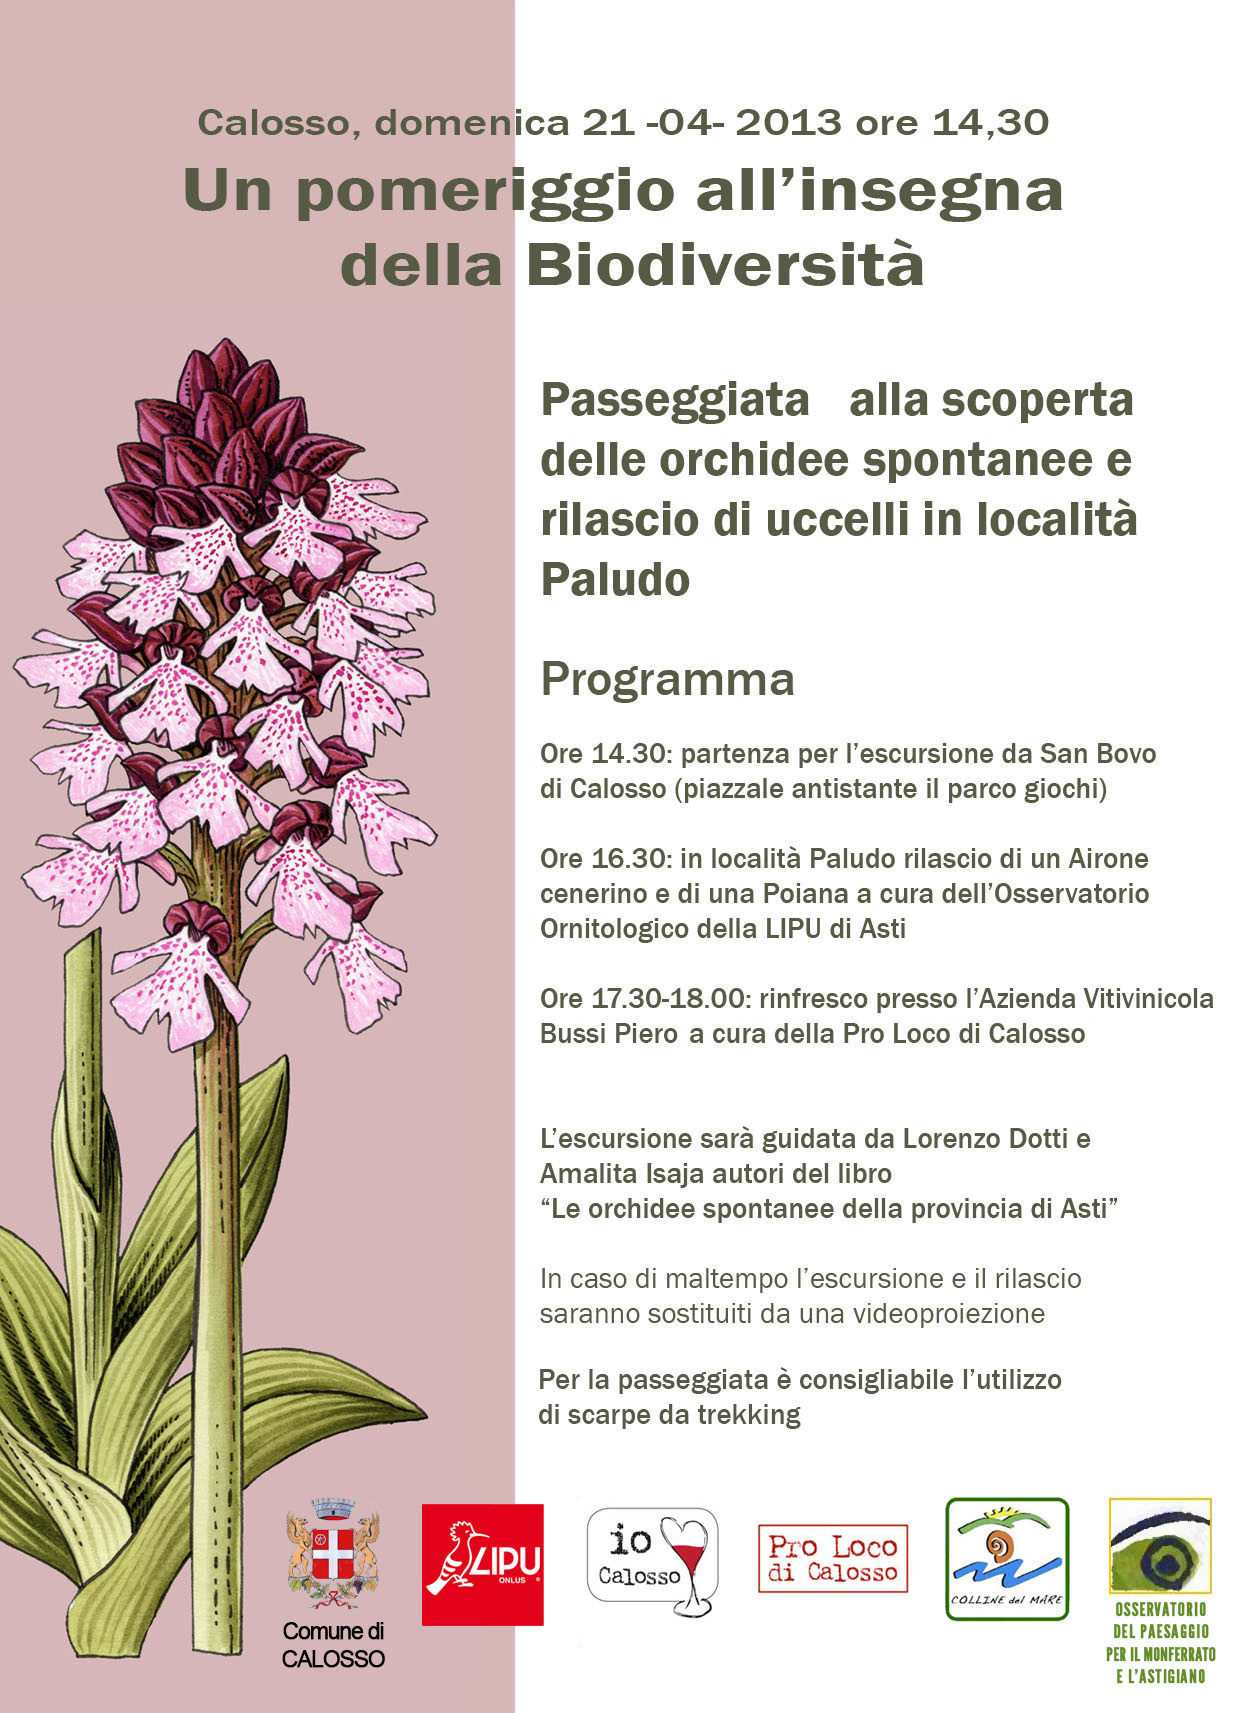 Programma della passeggiata alla scoperta delle orchidee spontanee e rilascio di uccelli in località Paludo (Calosso, domenica 21 aprile 2013).